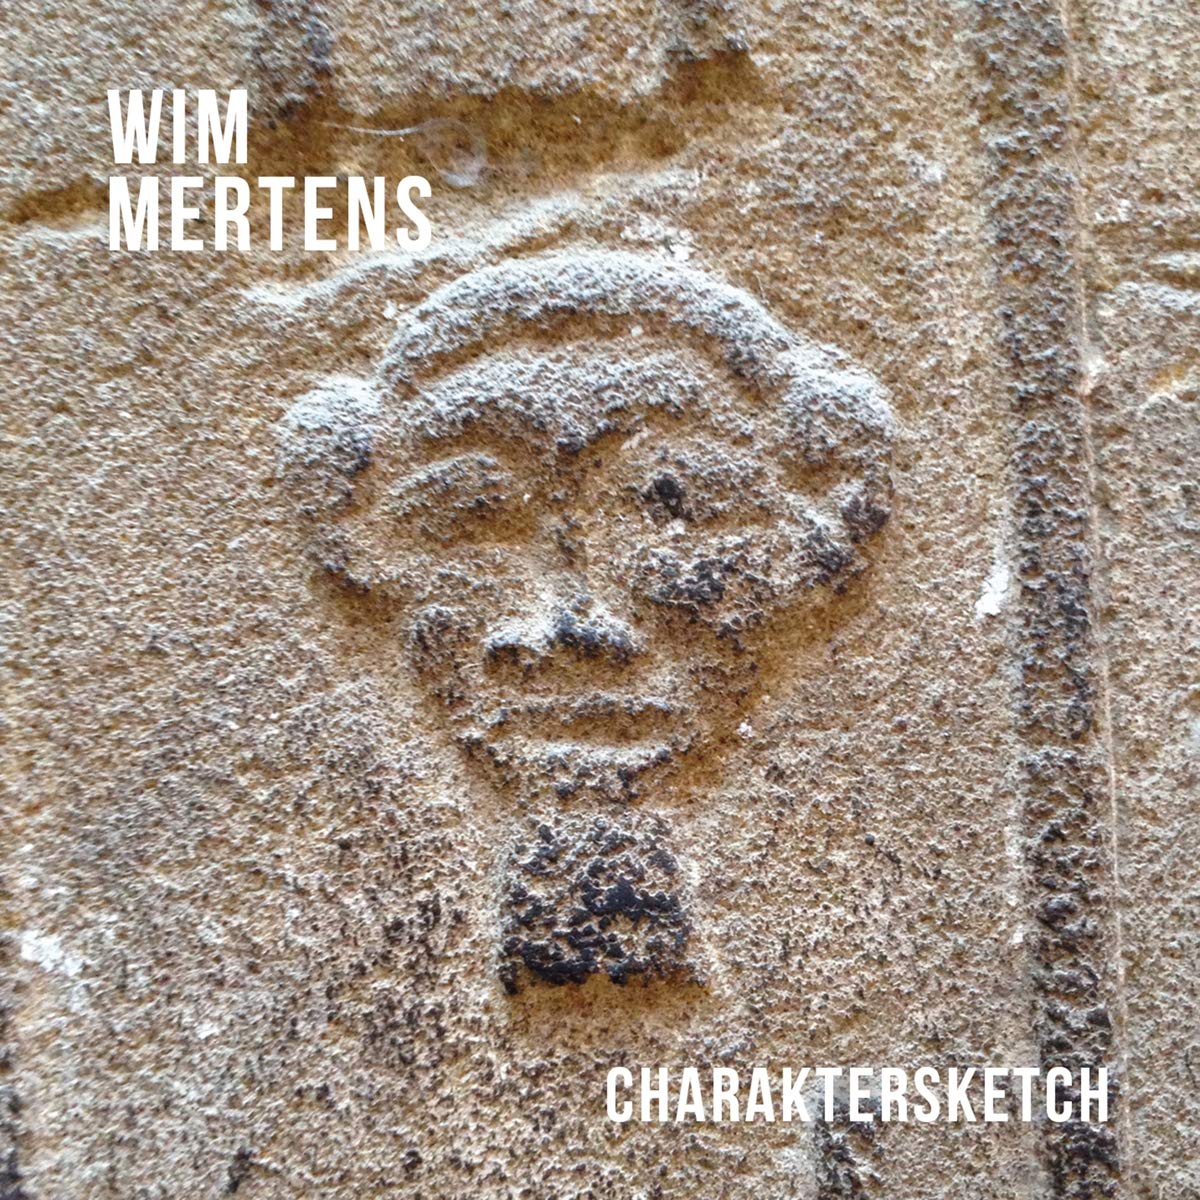 Wim Mertens-Charaktersketch-CD-FLAC-2015-D2H